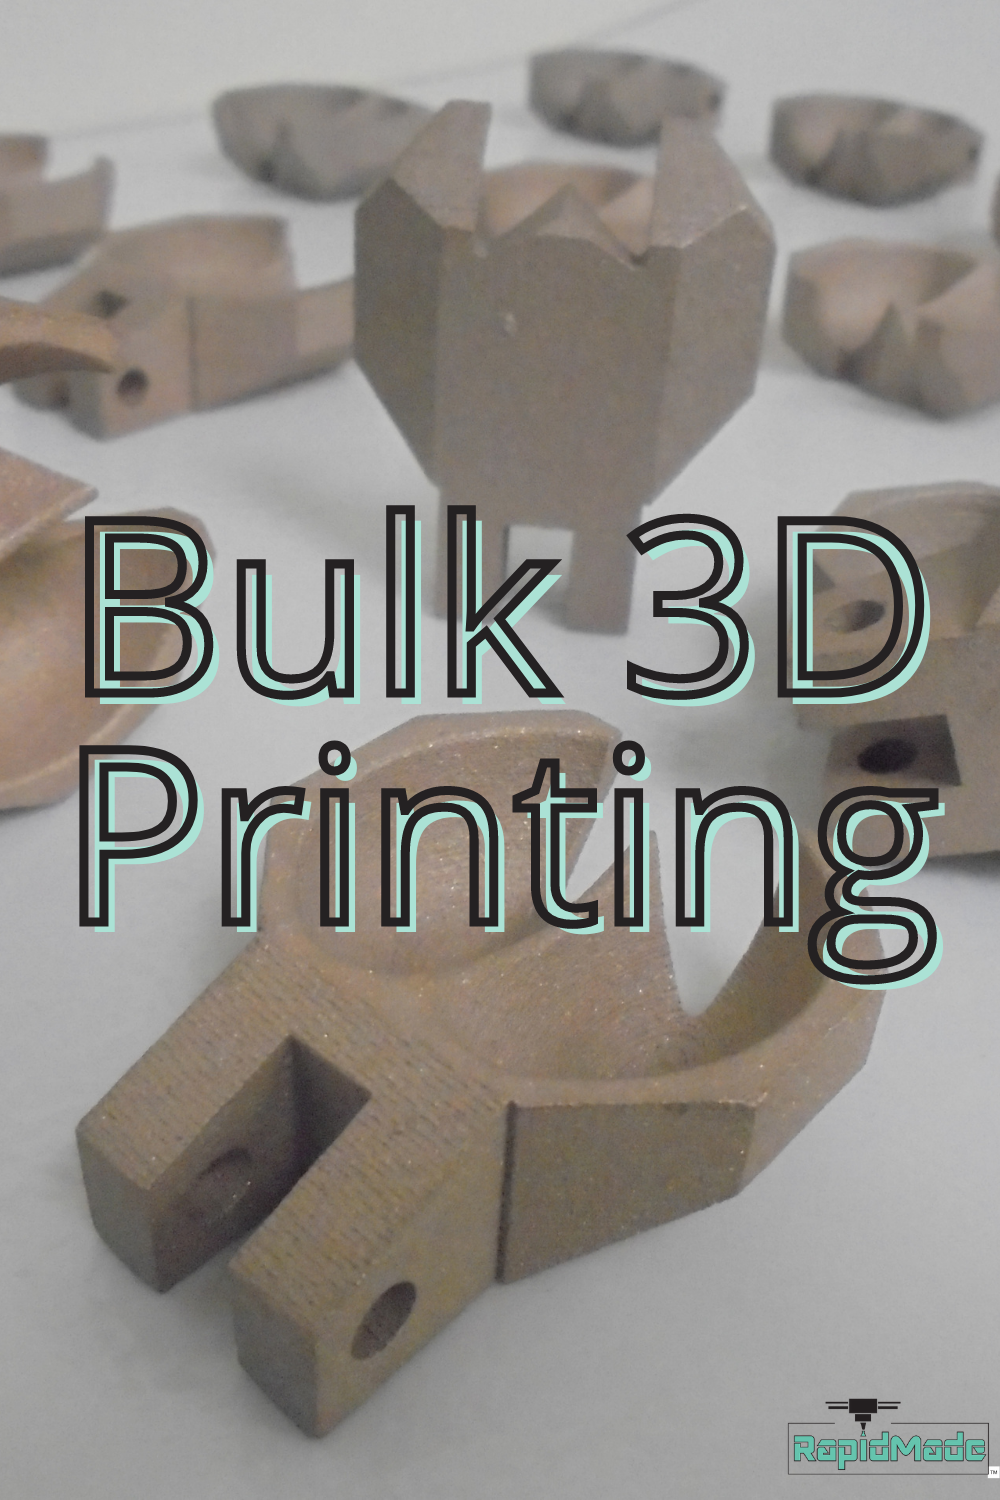 Bulk 3D Printer.png